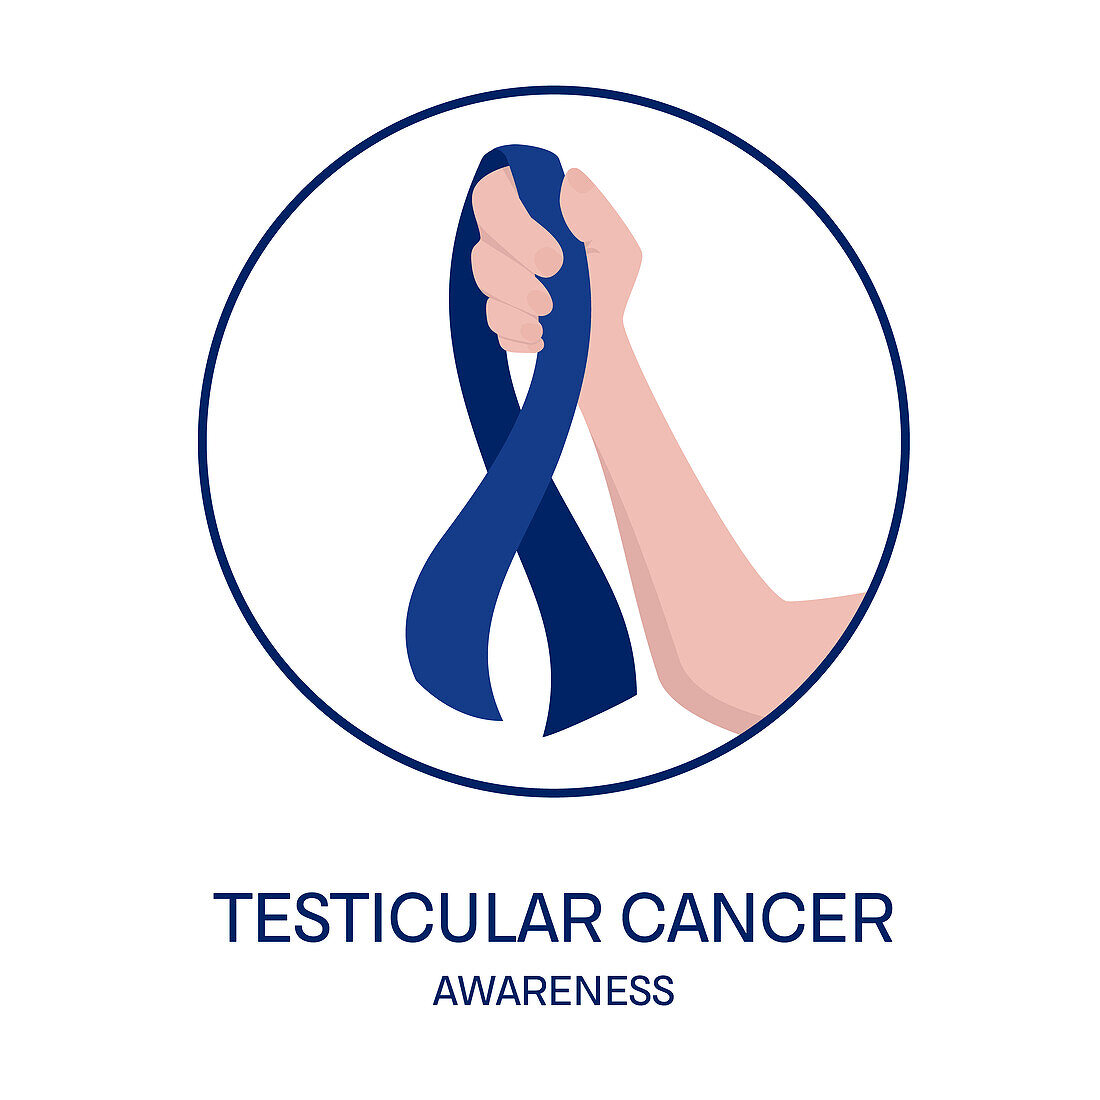 Testicular cancer awareness ribbon, conceptual